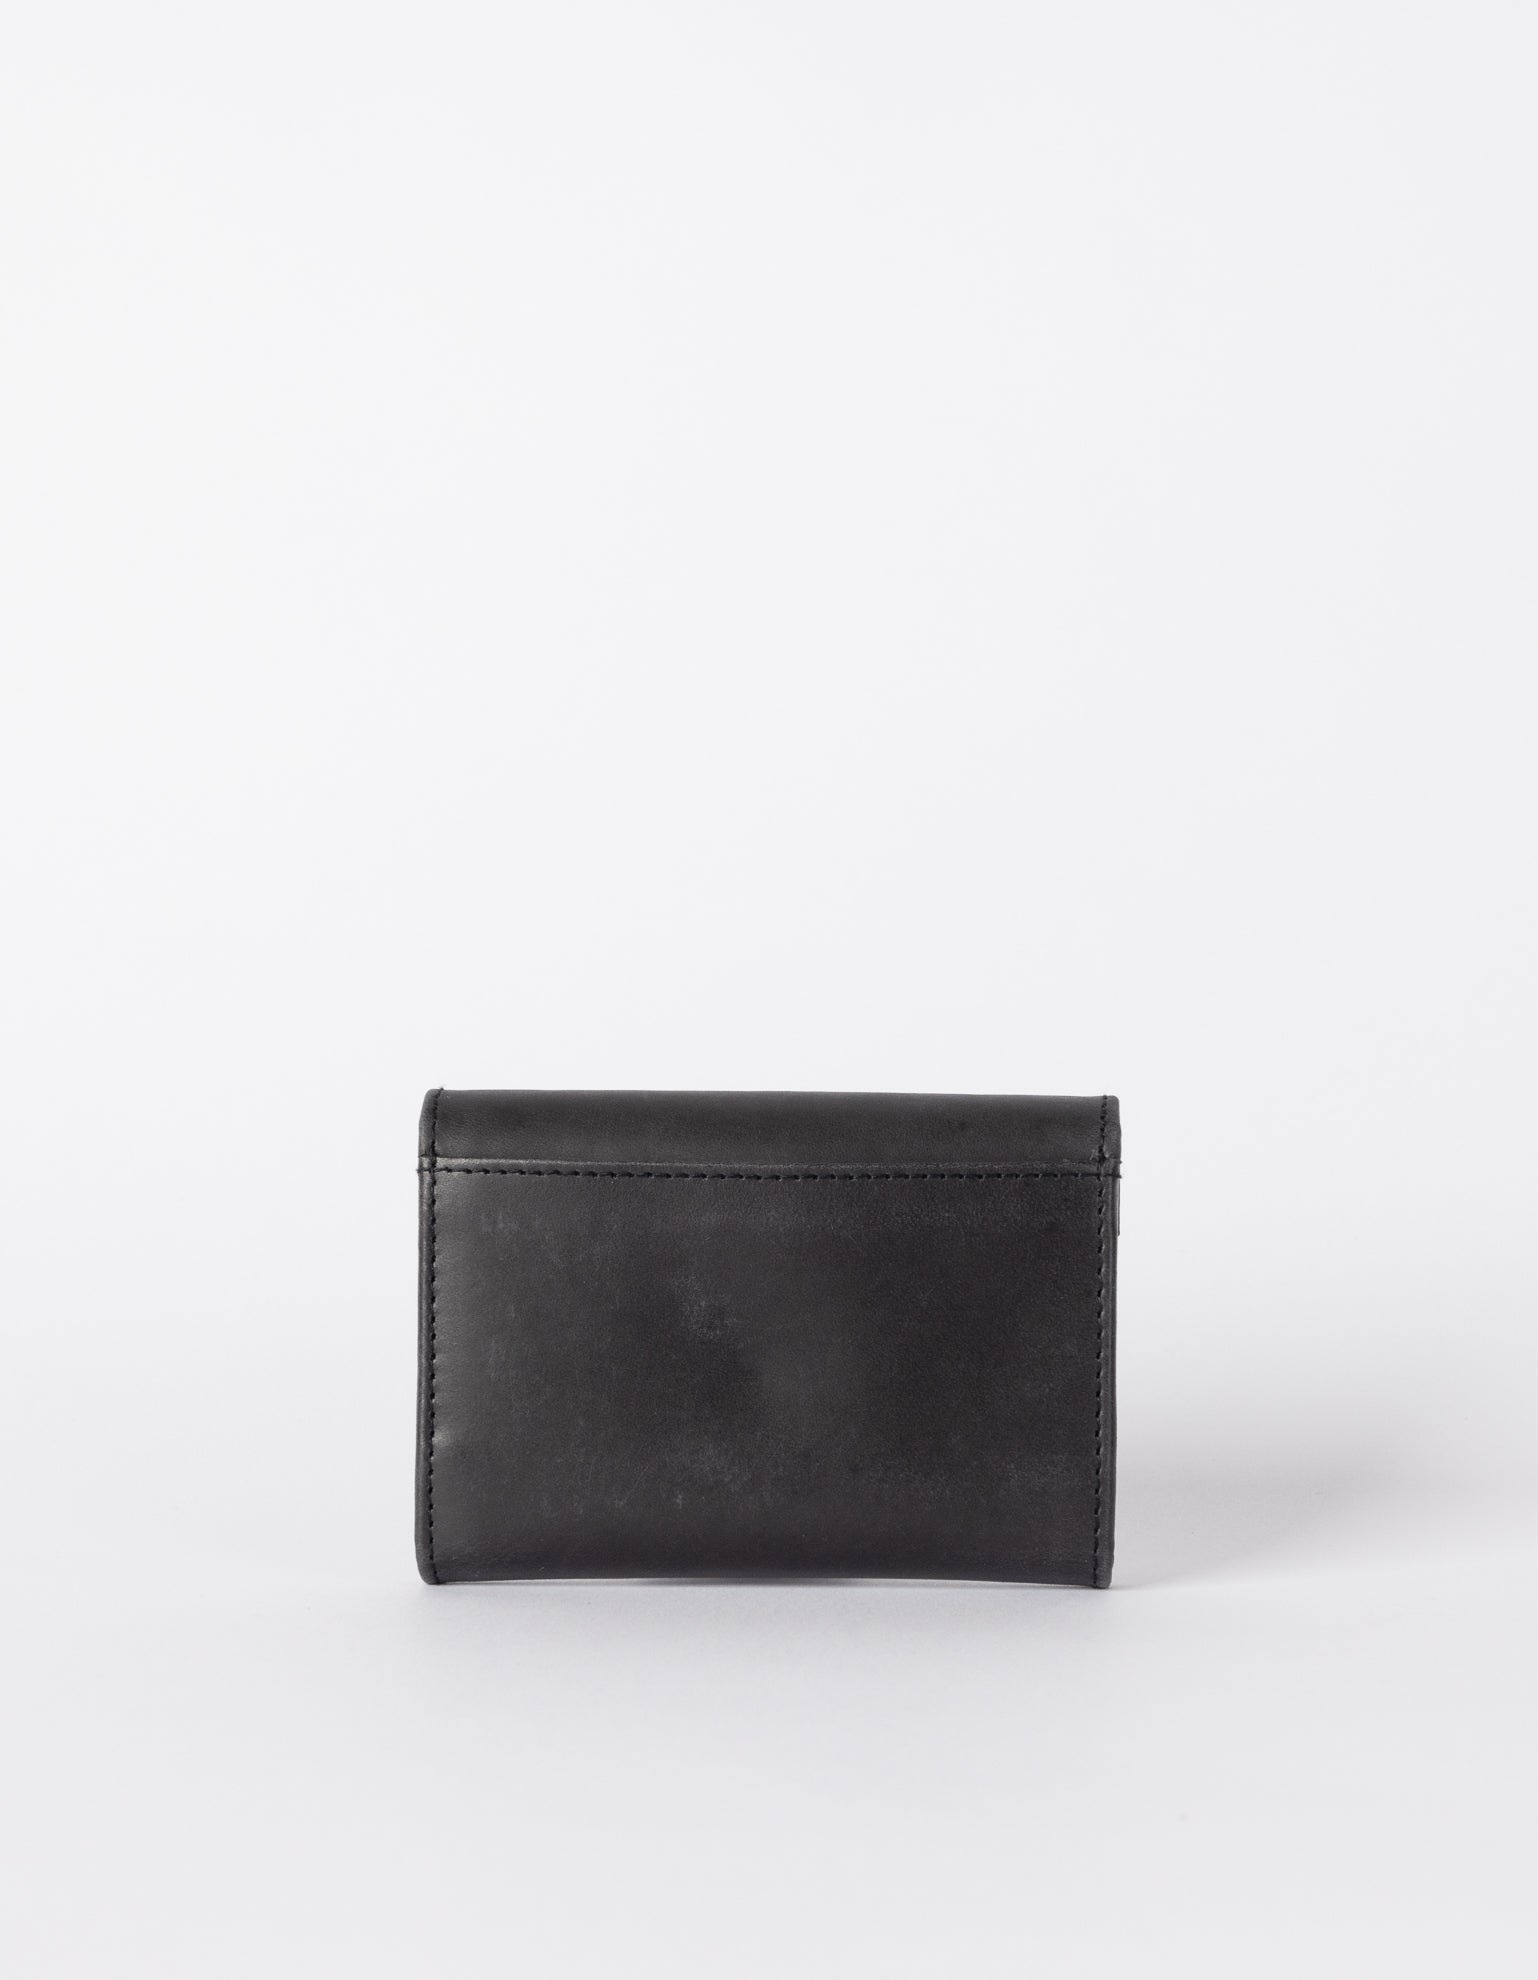 Black Leather wallet. Envelope shape. Back product image.